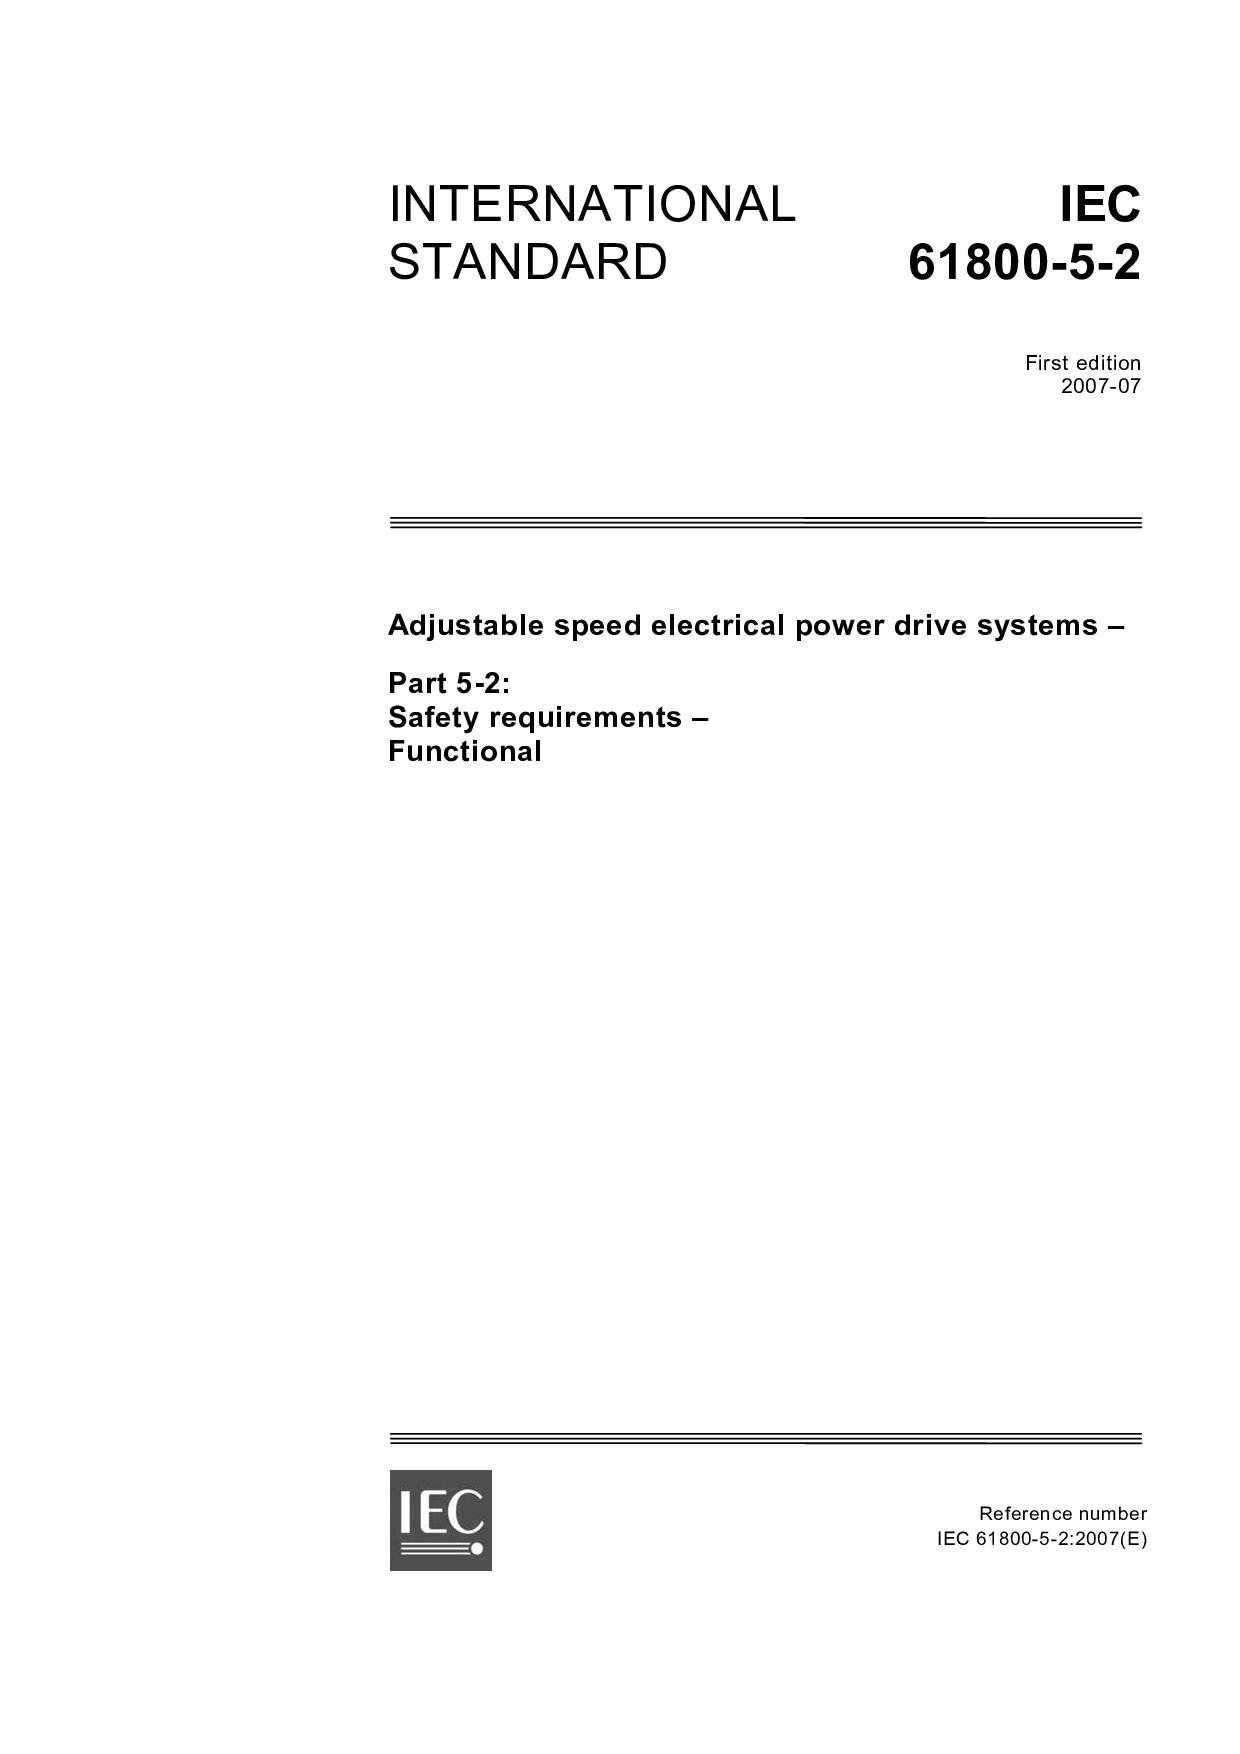 IEC 61800-5-2:2007